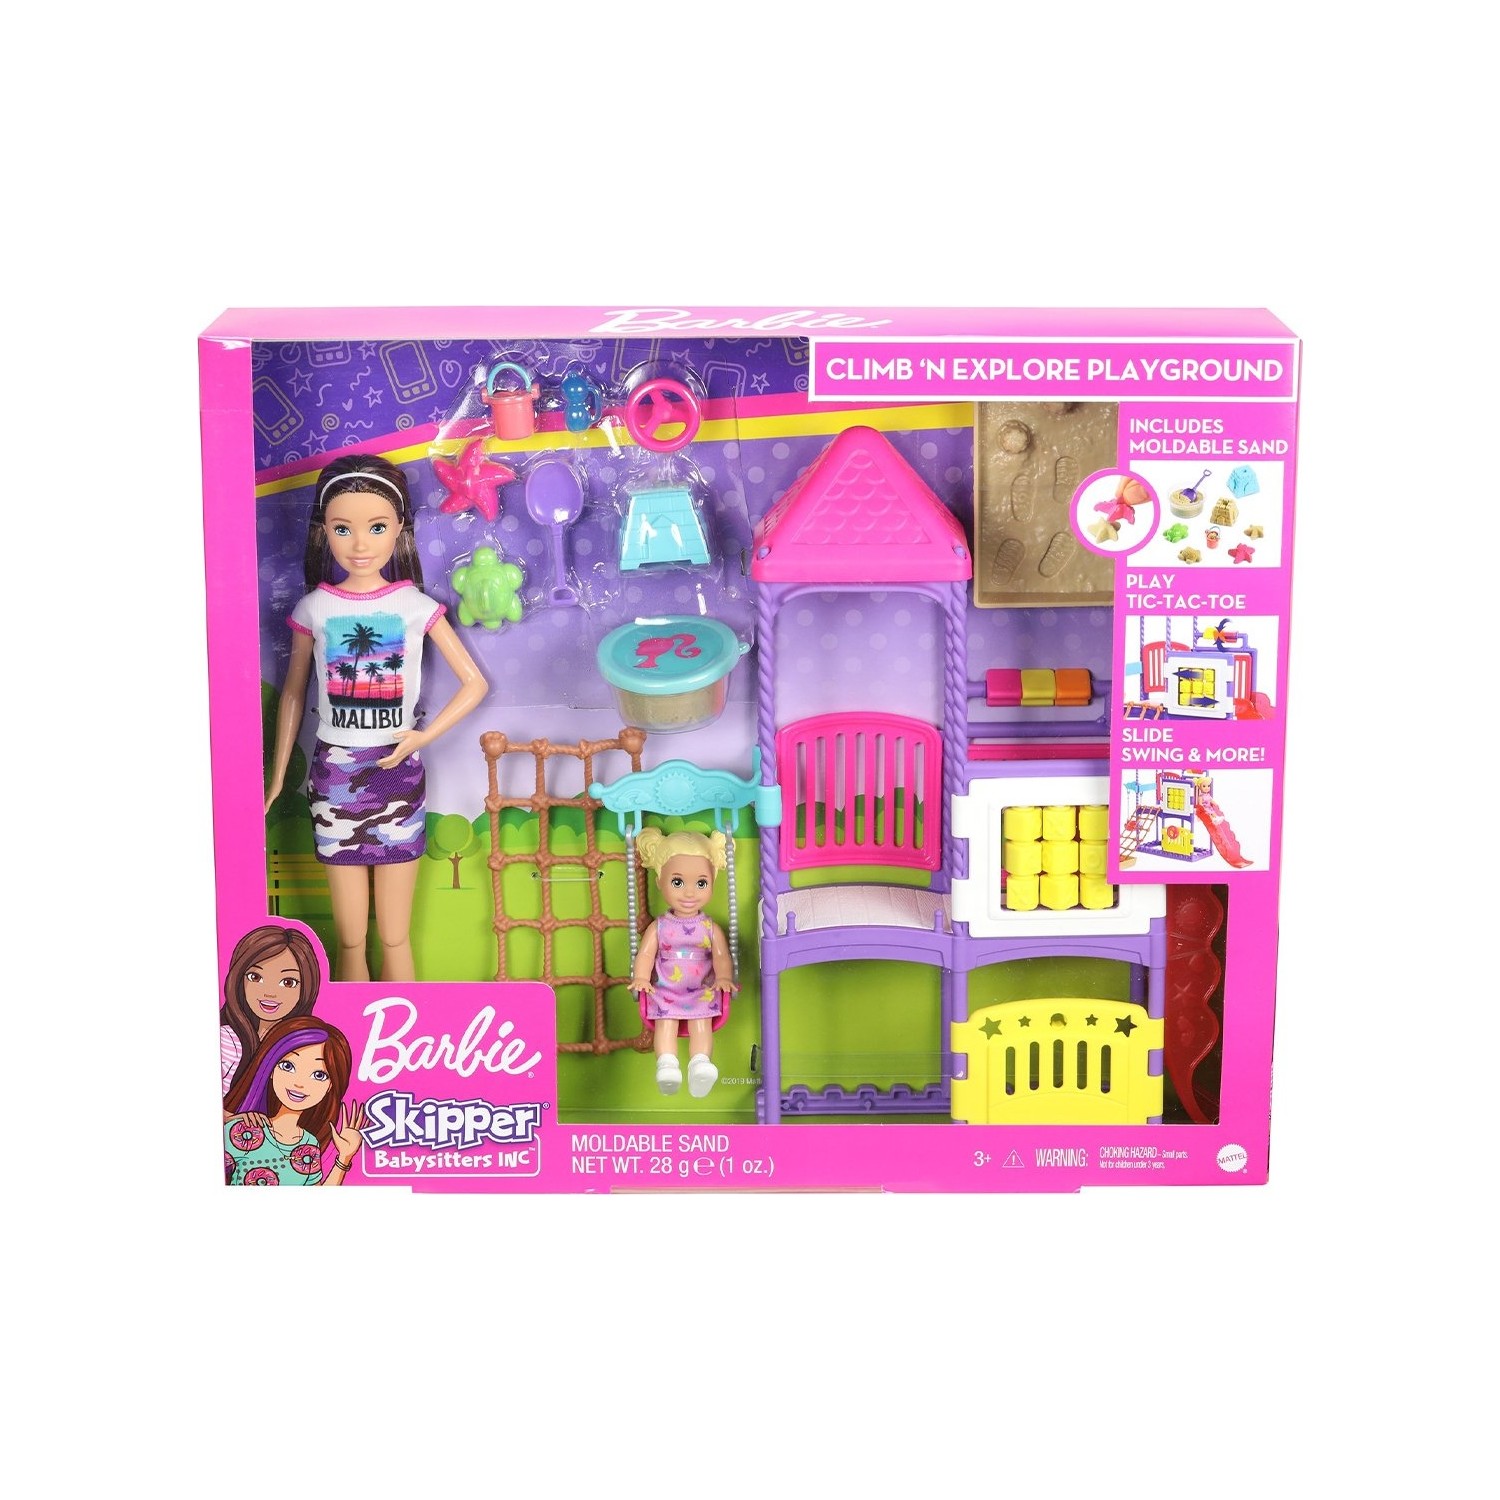 Игровой набор Barbie Skipper Babysitters игровой набор barbie home accessory packs grg56